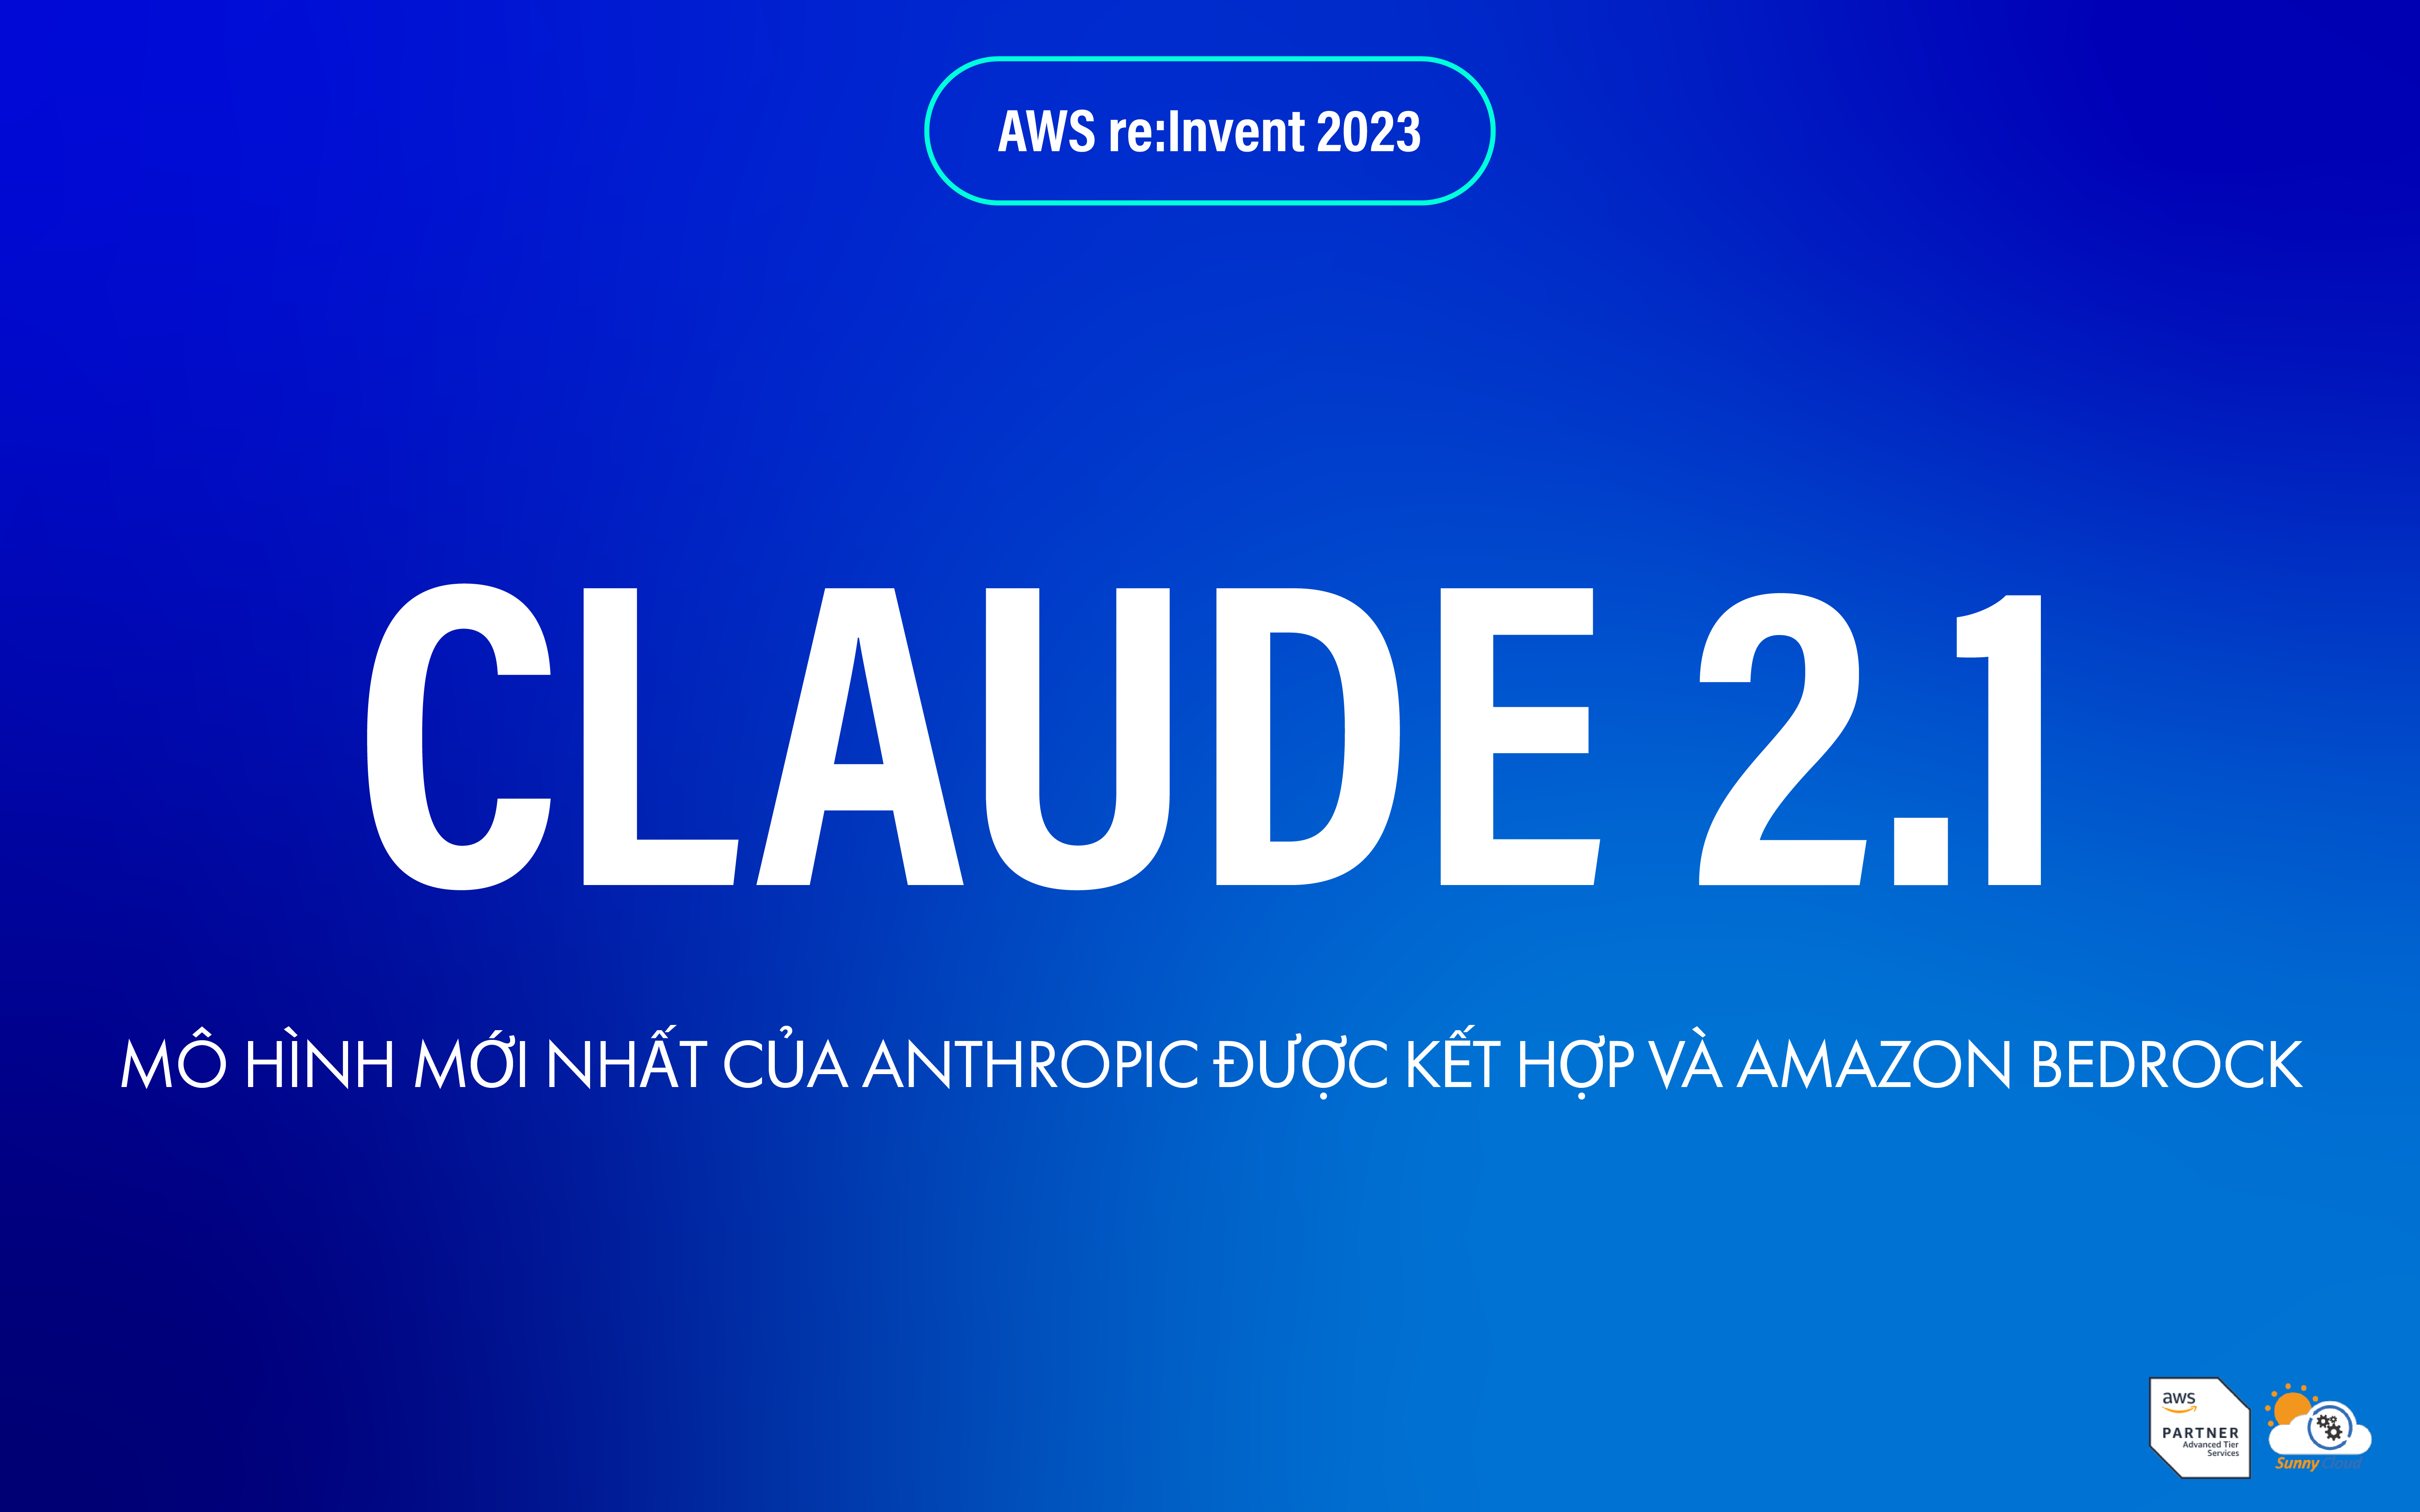 Claude 2.1 – mô hình mới nhất của Anthropic được kết hợp và Amazon Bedrock